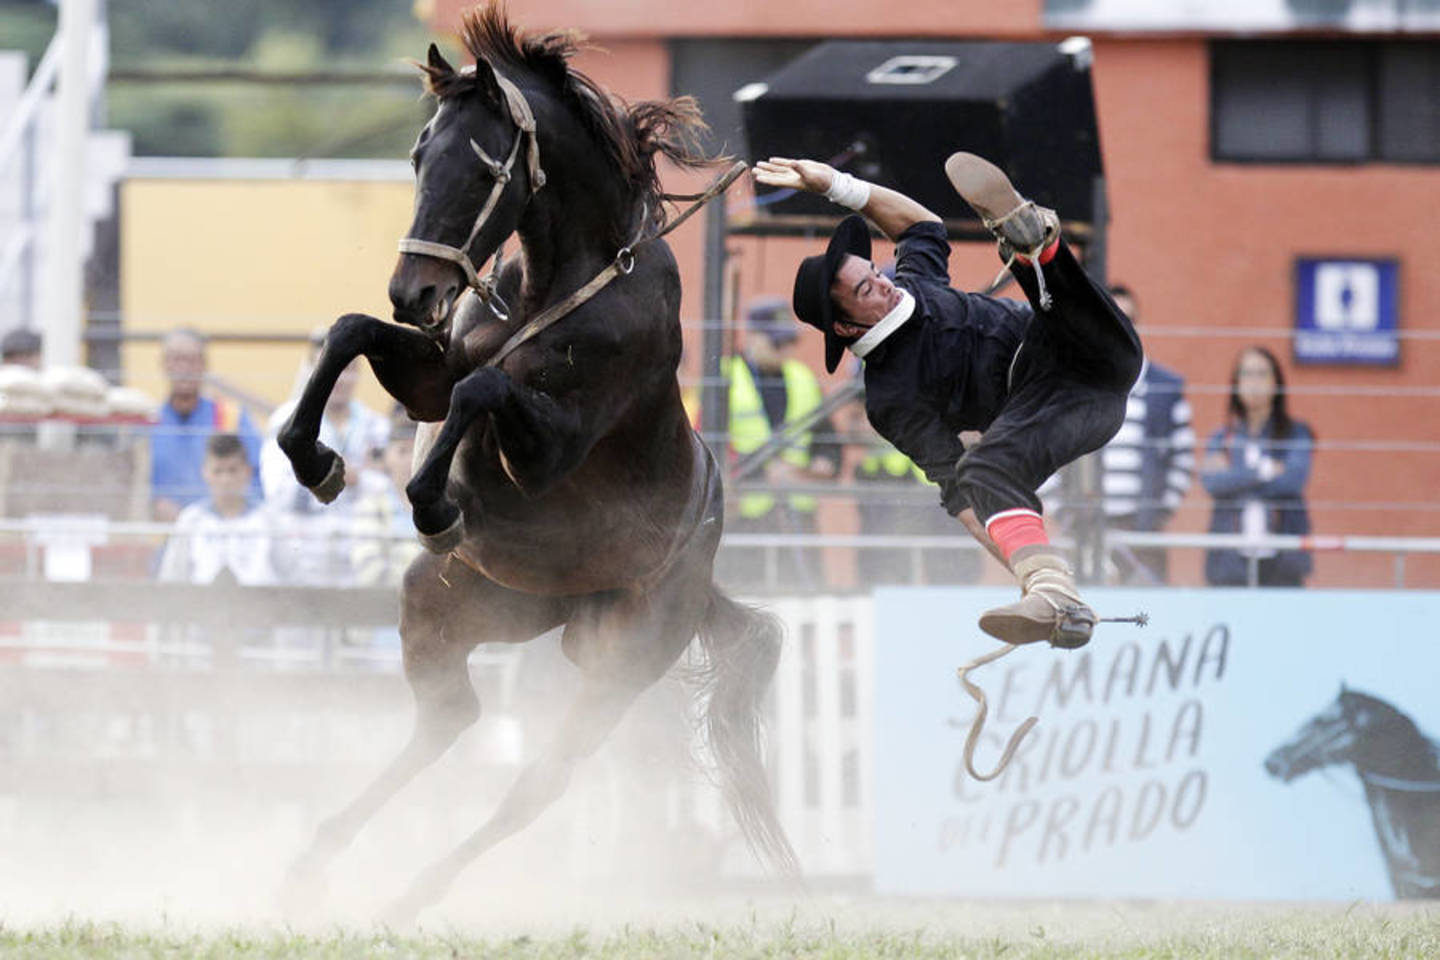  Raitelis krenta nuo laukinio žirgo per rodeo. Balandžio 12-oji, Montevidėjas (Urugvajus).<br> AP nuotr.